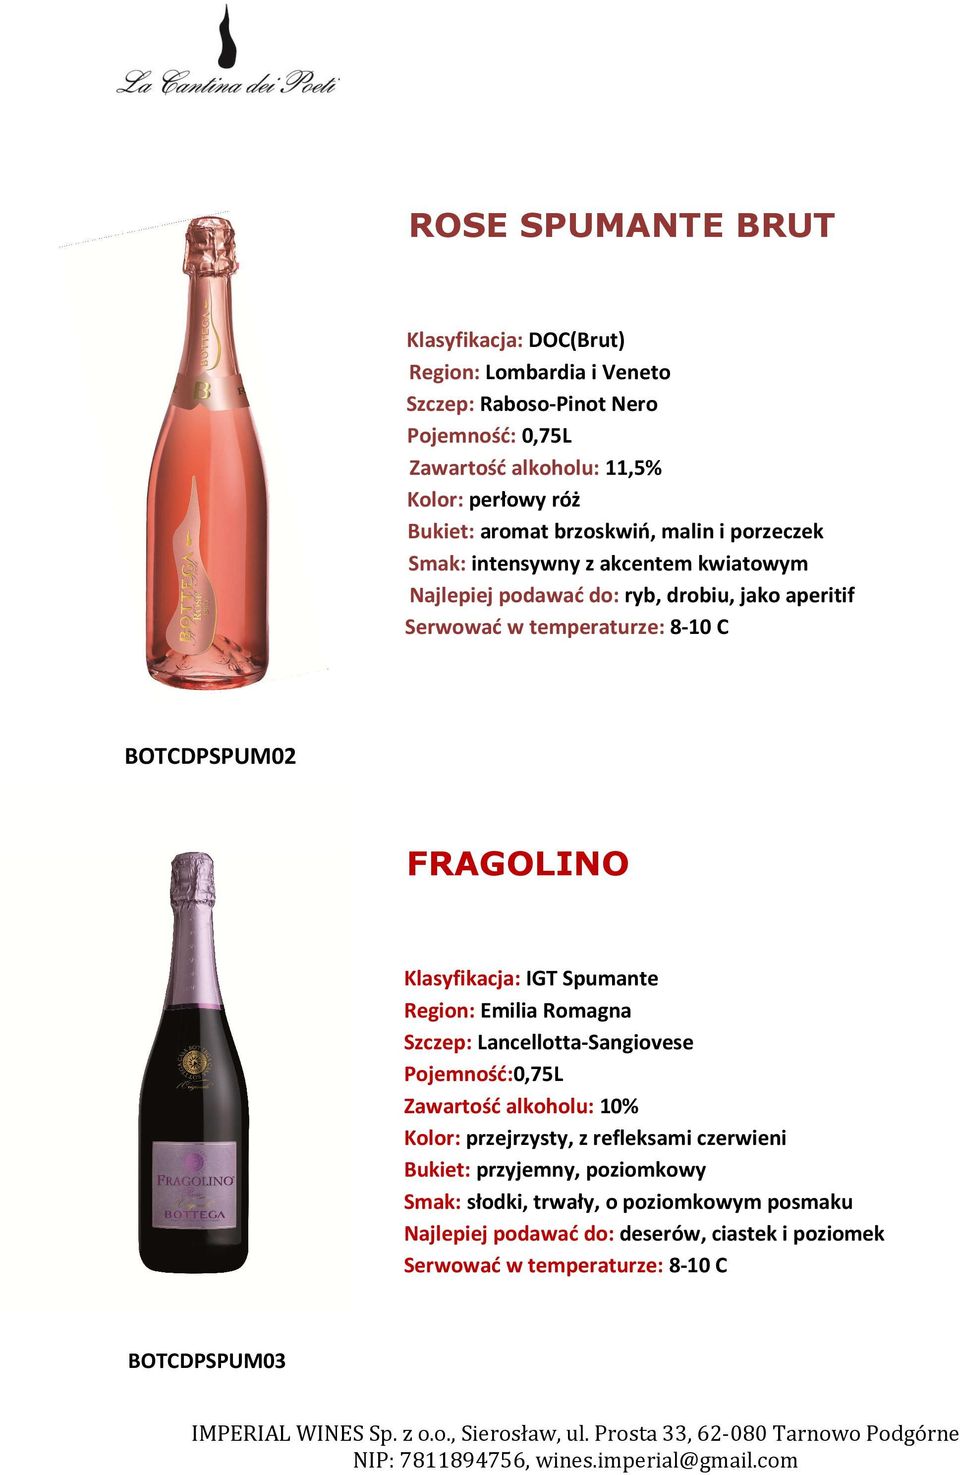 FRAGOLINO Spumante Region: Emilia Romagna Szczep: Lancellotta-Sangiovese Pojemność:0,75L Zawartość alkoholu: 10% Kolor: przejrzysty, z refleksami czerwieni